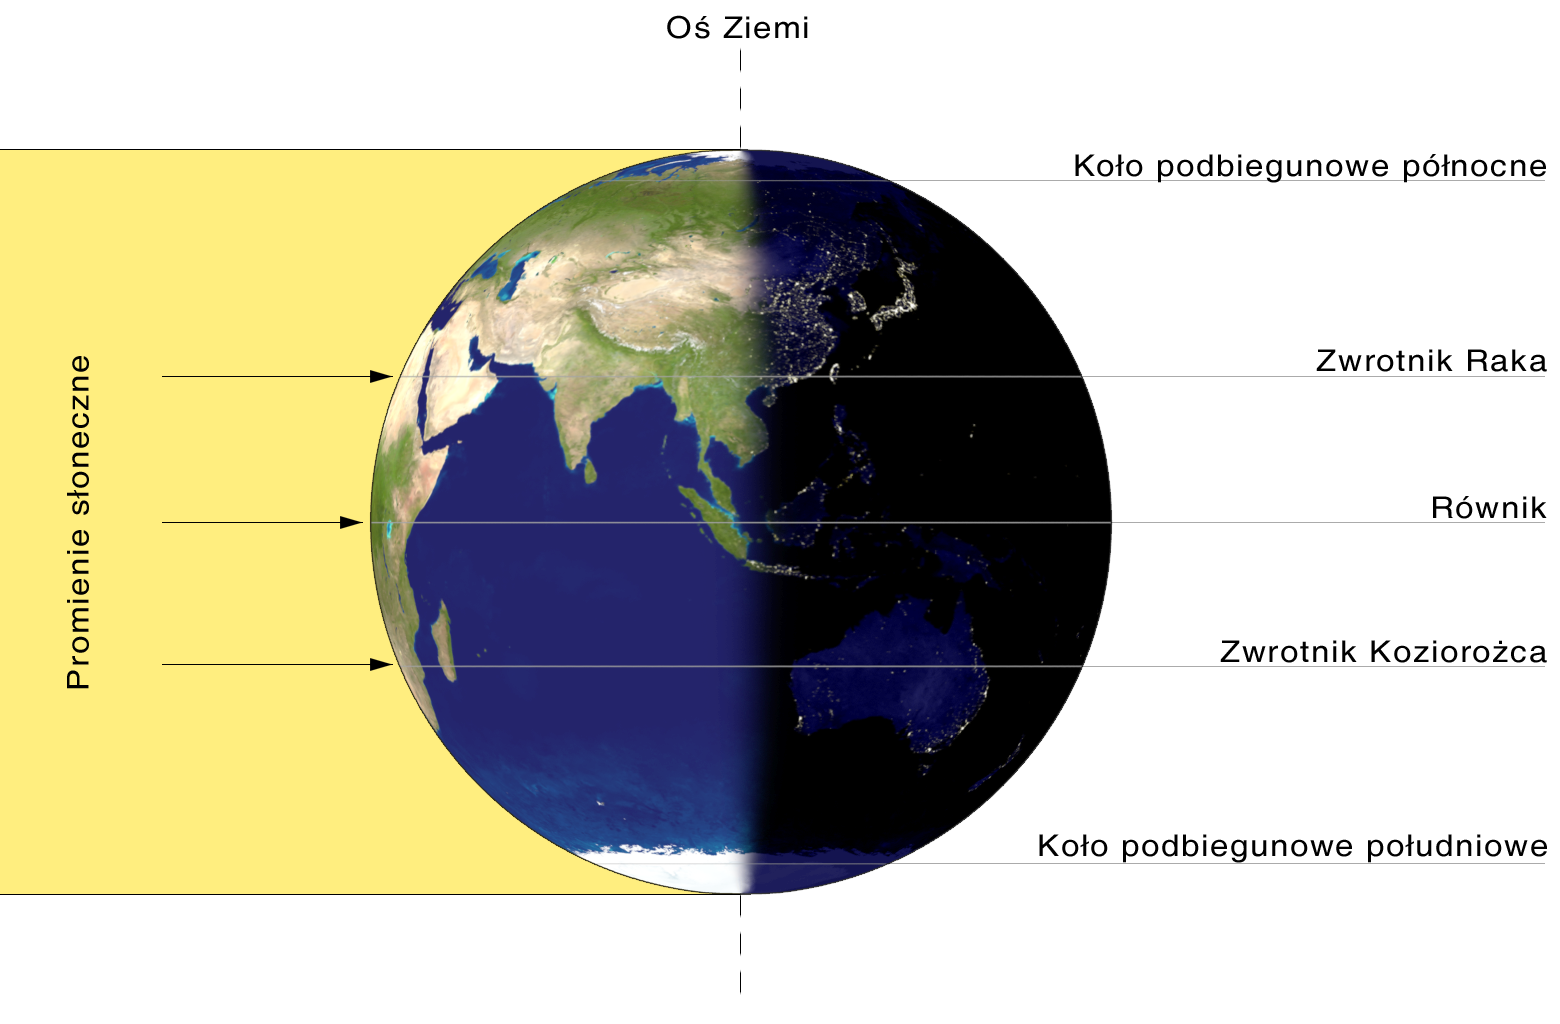 Oświetlenie Ziemi przez Słońce w dniu równonocy. Rys. Wikimedia